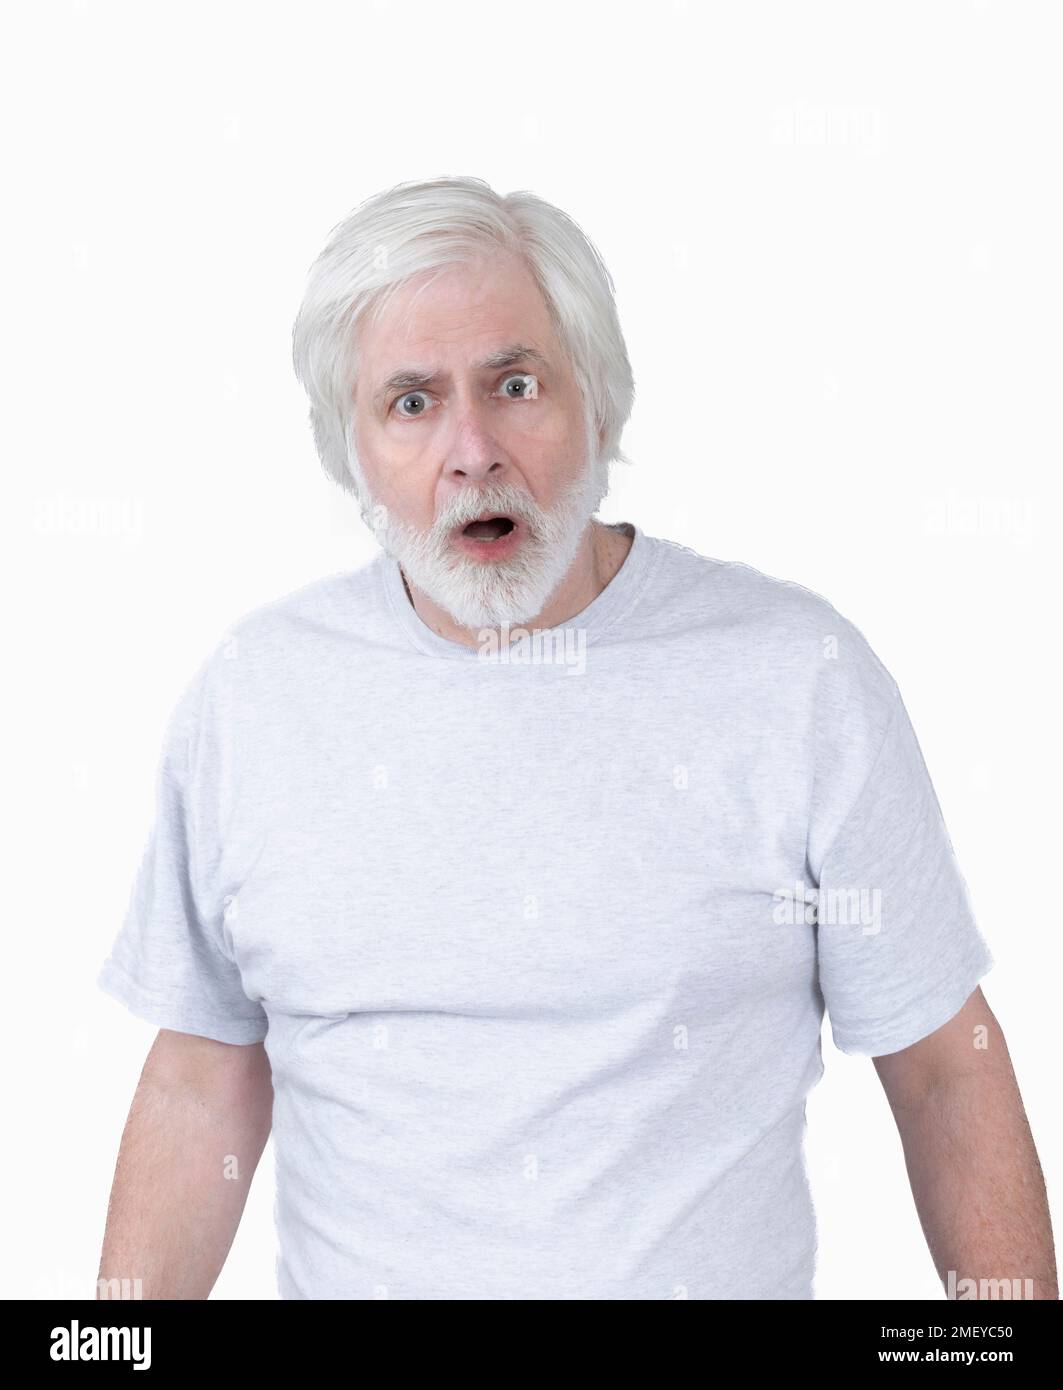 Vertikale Aufnahme eines erstaunt oder erschrockenen alten Mannes mit weißem Haar auf weißem Hintergrund. Von der Hüfte nach oben. Stockfoto